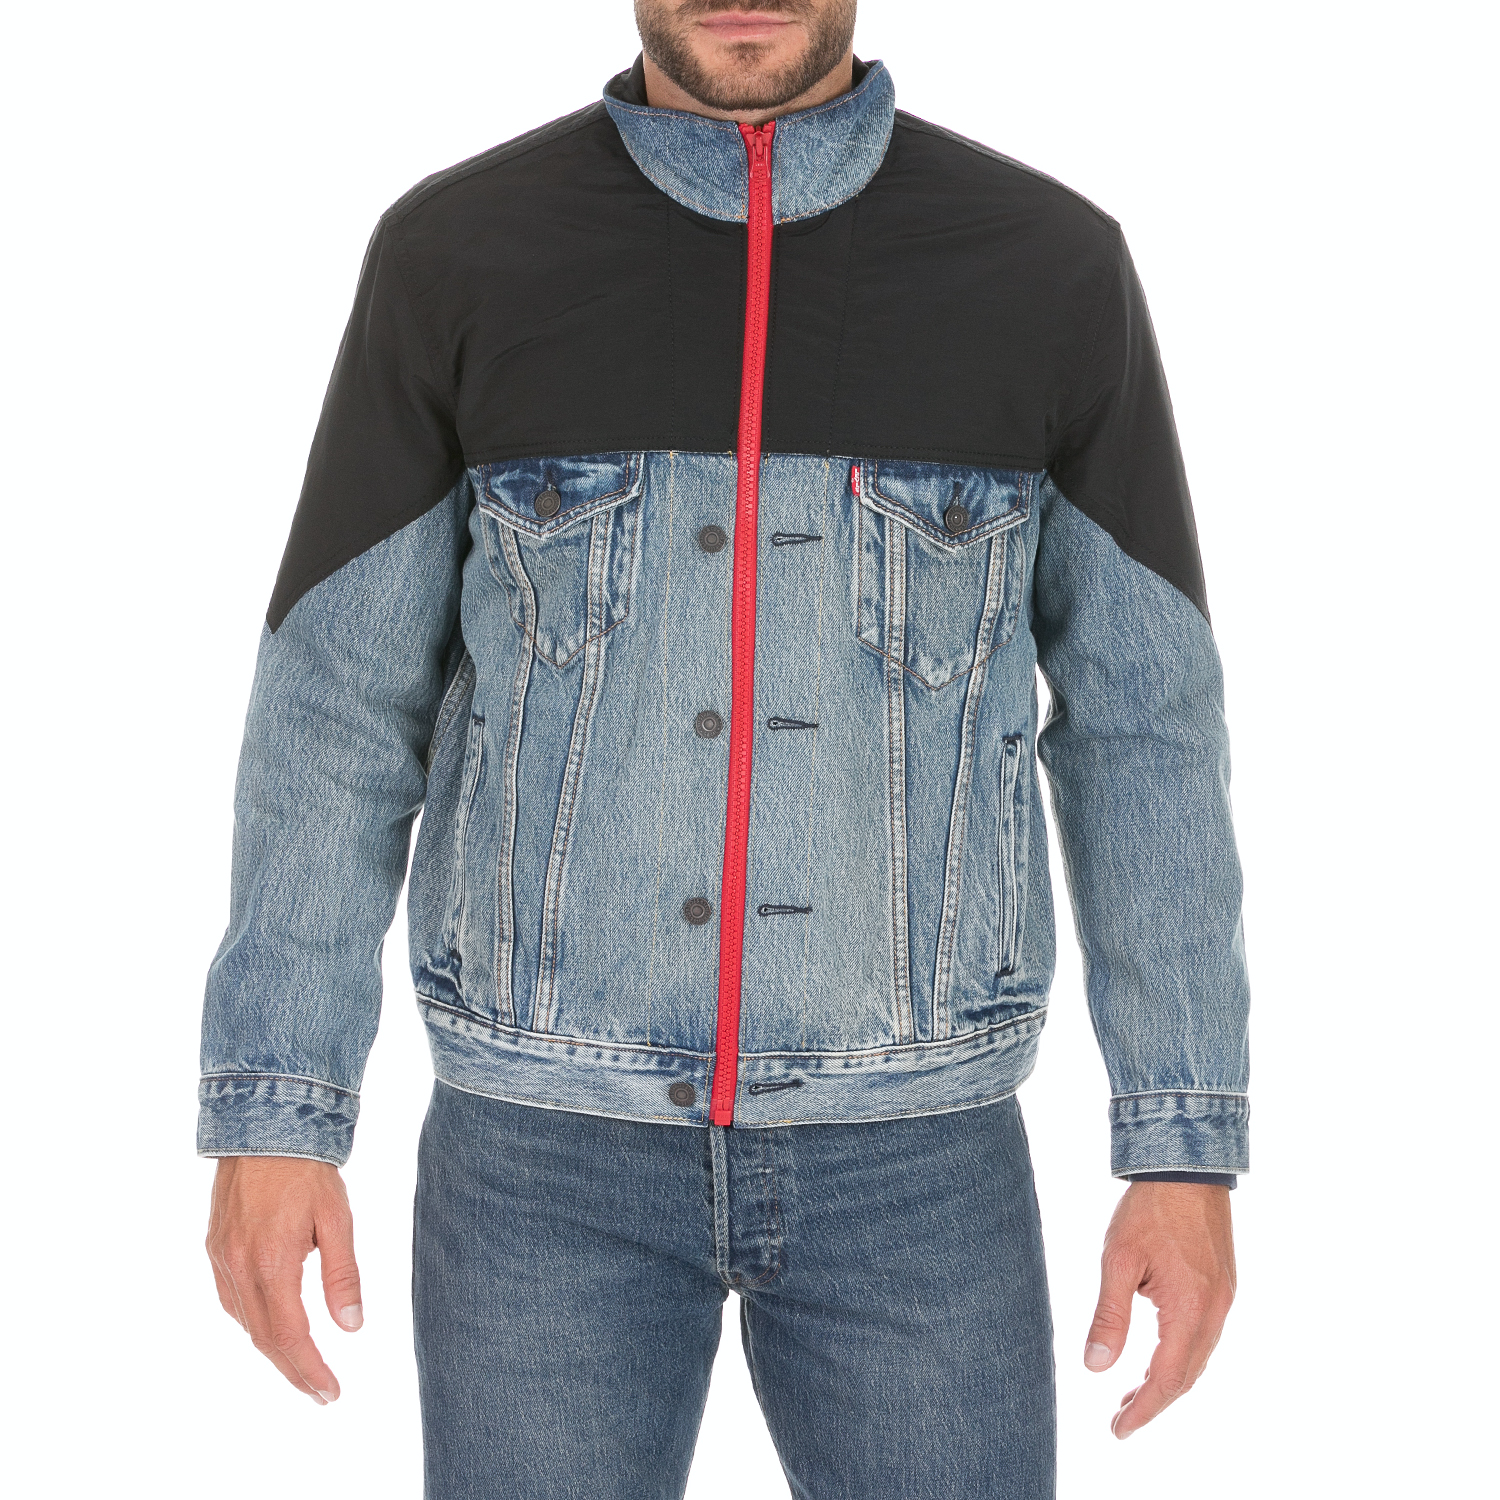 Ανδρικά/Ρούχα/Πανωφόρια/Τζάκετς LEVI'S - Ανδρικό jacket LEVI'S UNBASIC MOCKNECK TRUCKER μπλε